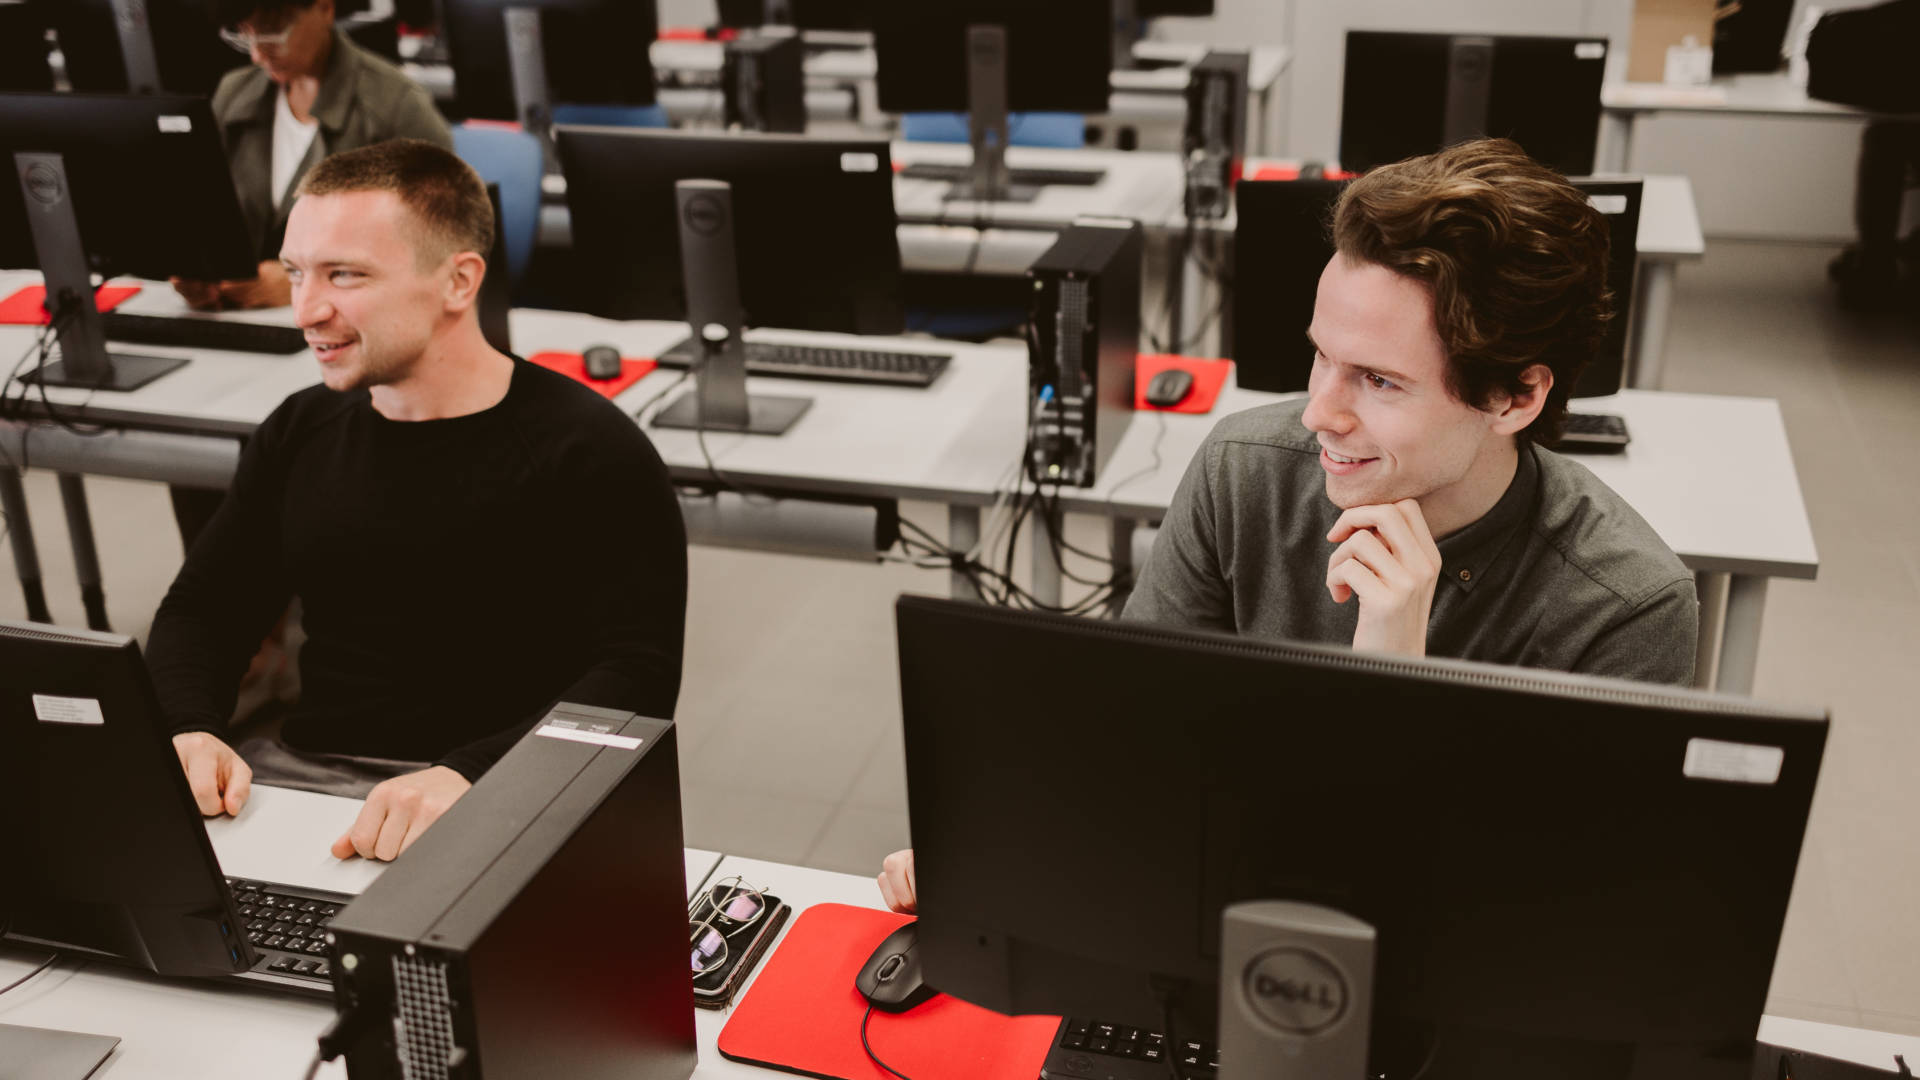 Kaksi Edusalon opiskelijaa istuu tietokoneen ääressä.